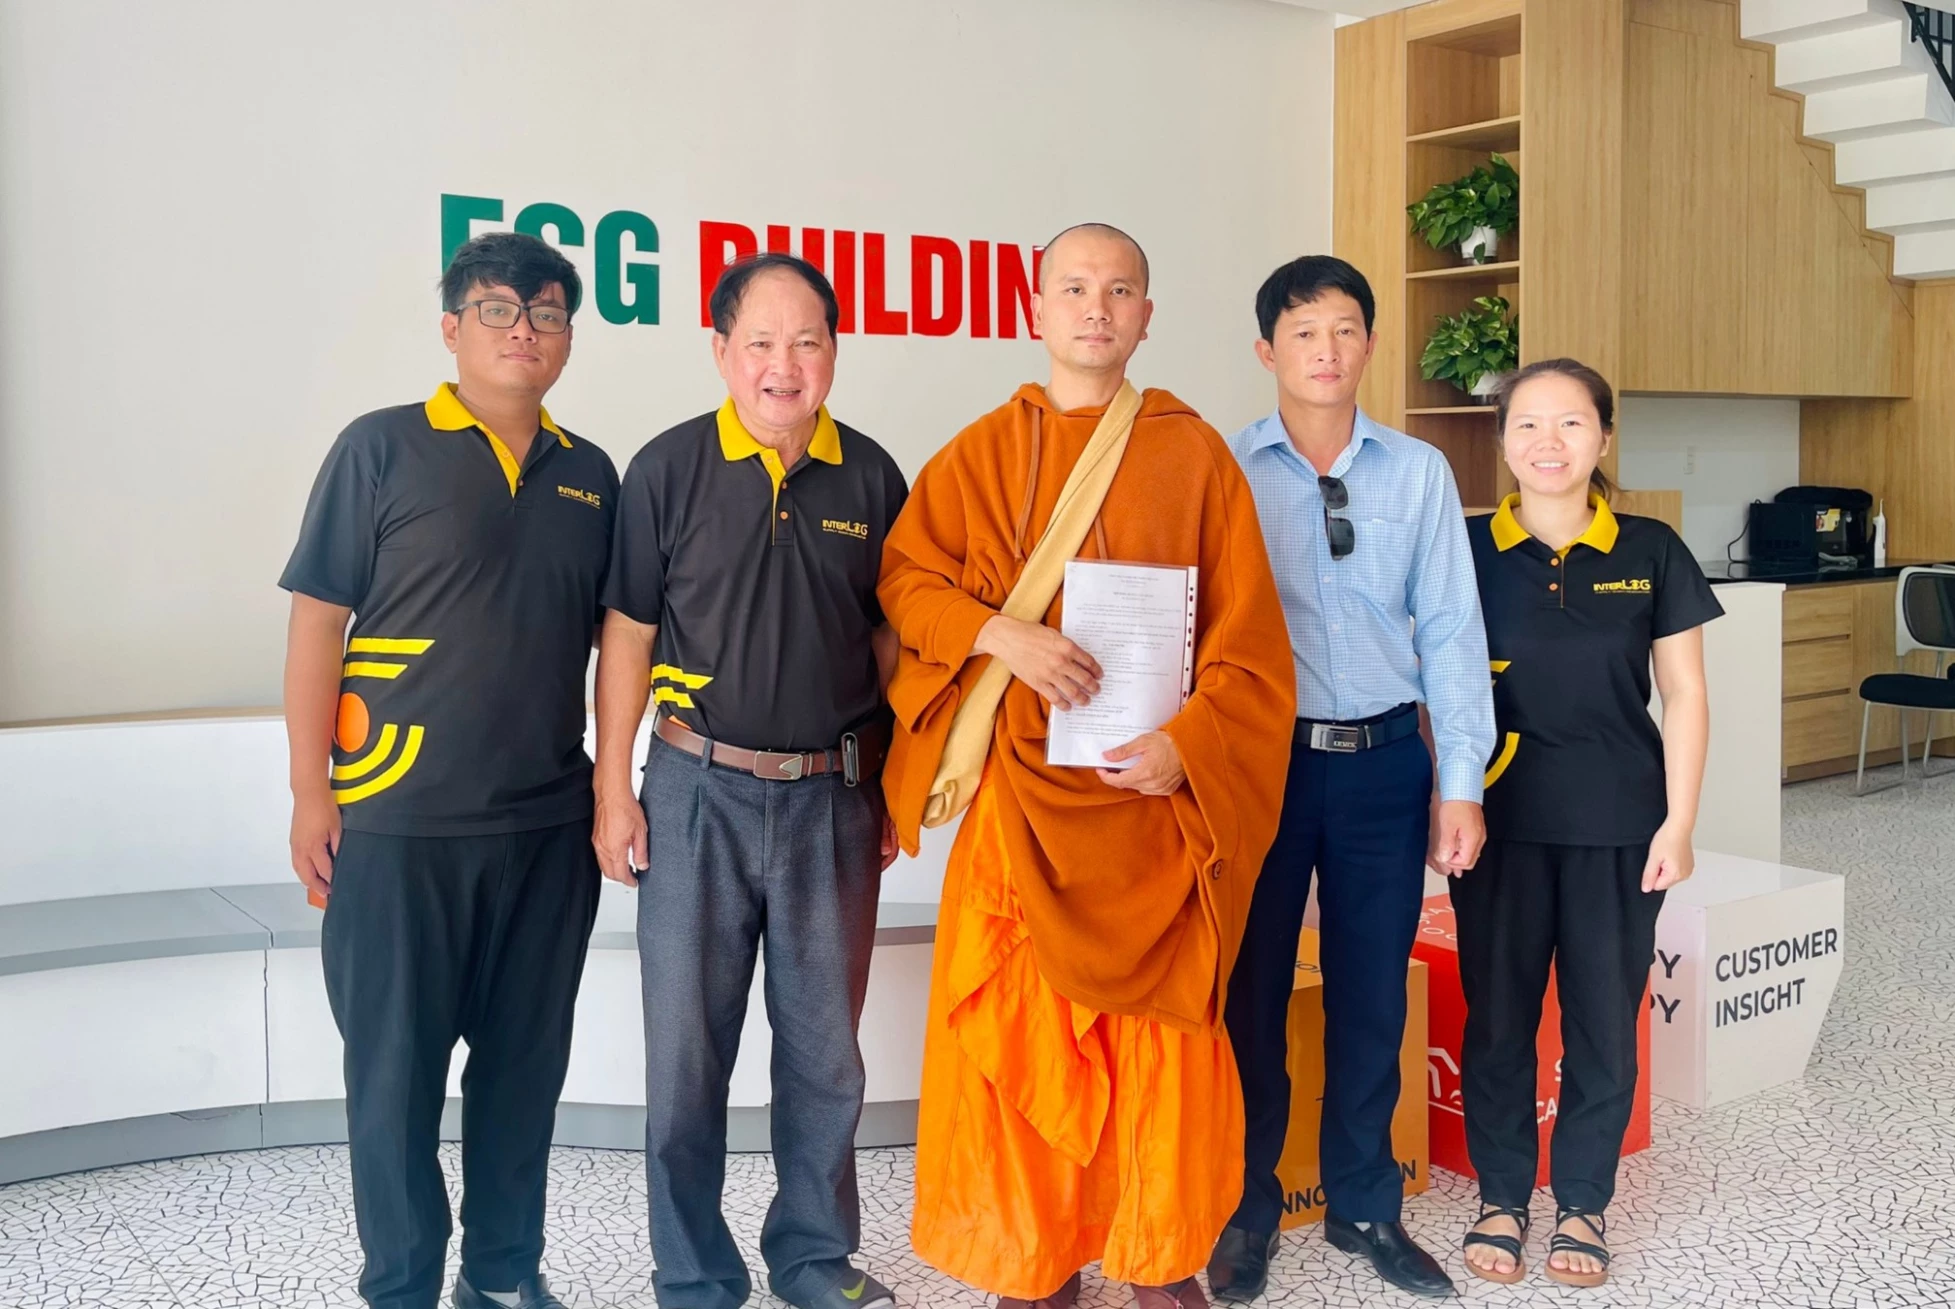 InterLOG và Nhân duyên được đồng hành cùng Sư Giác Biên trong hành trình vận chuyển hàng nhà chùa từ Việt Nam đi Mỹ